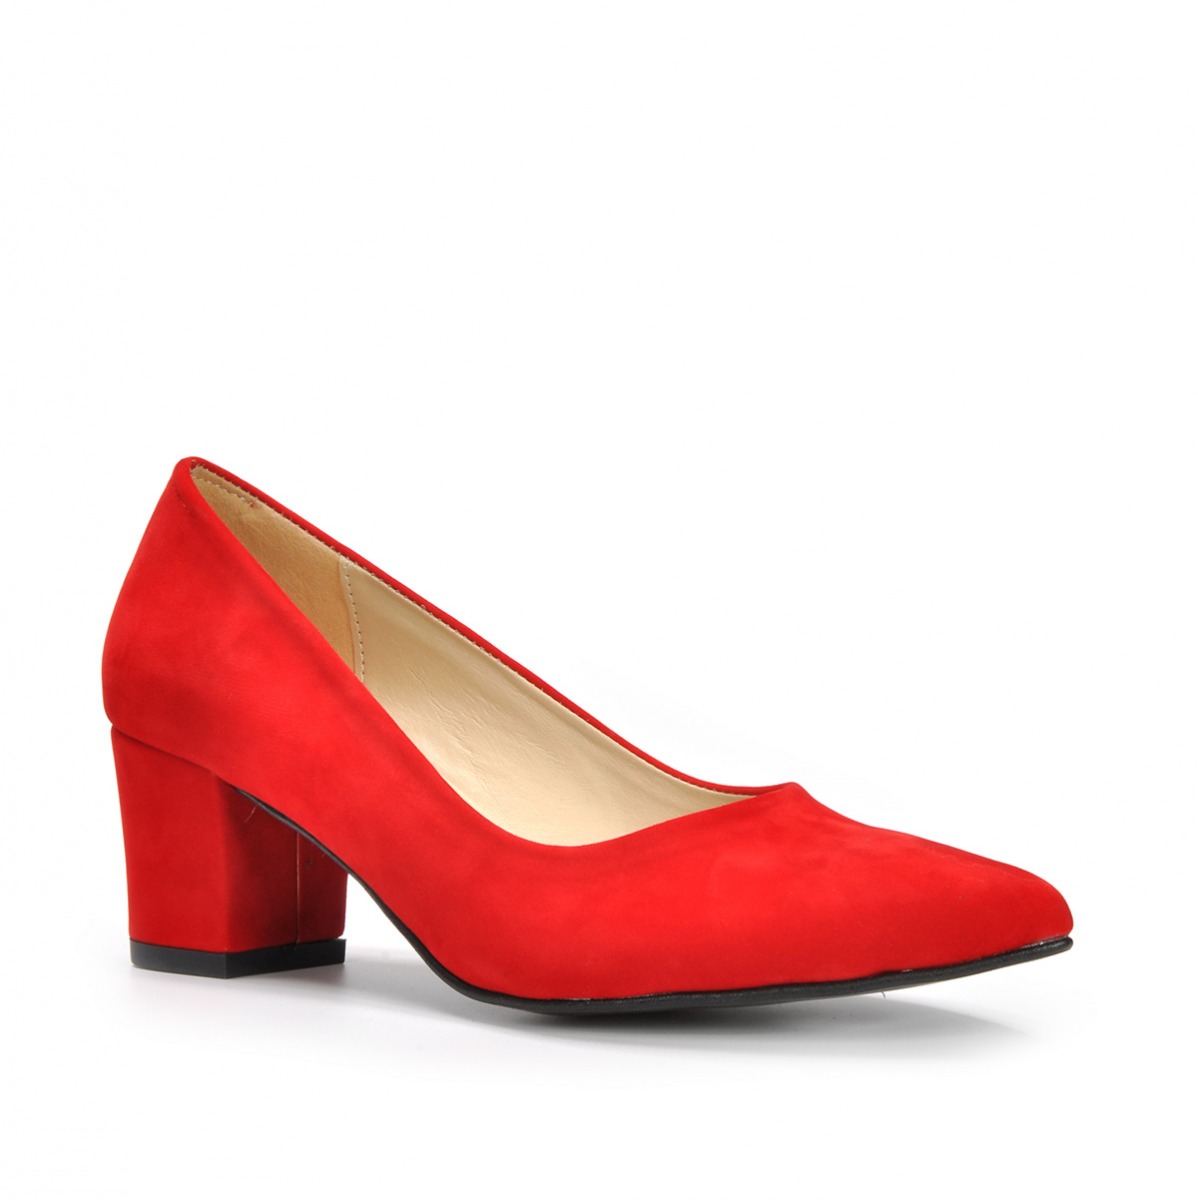 Flo Kadın  Kırmızı-Süet Klasik Topuklu Ayakkabı VZN19-111K. 3